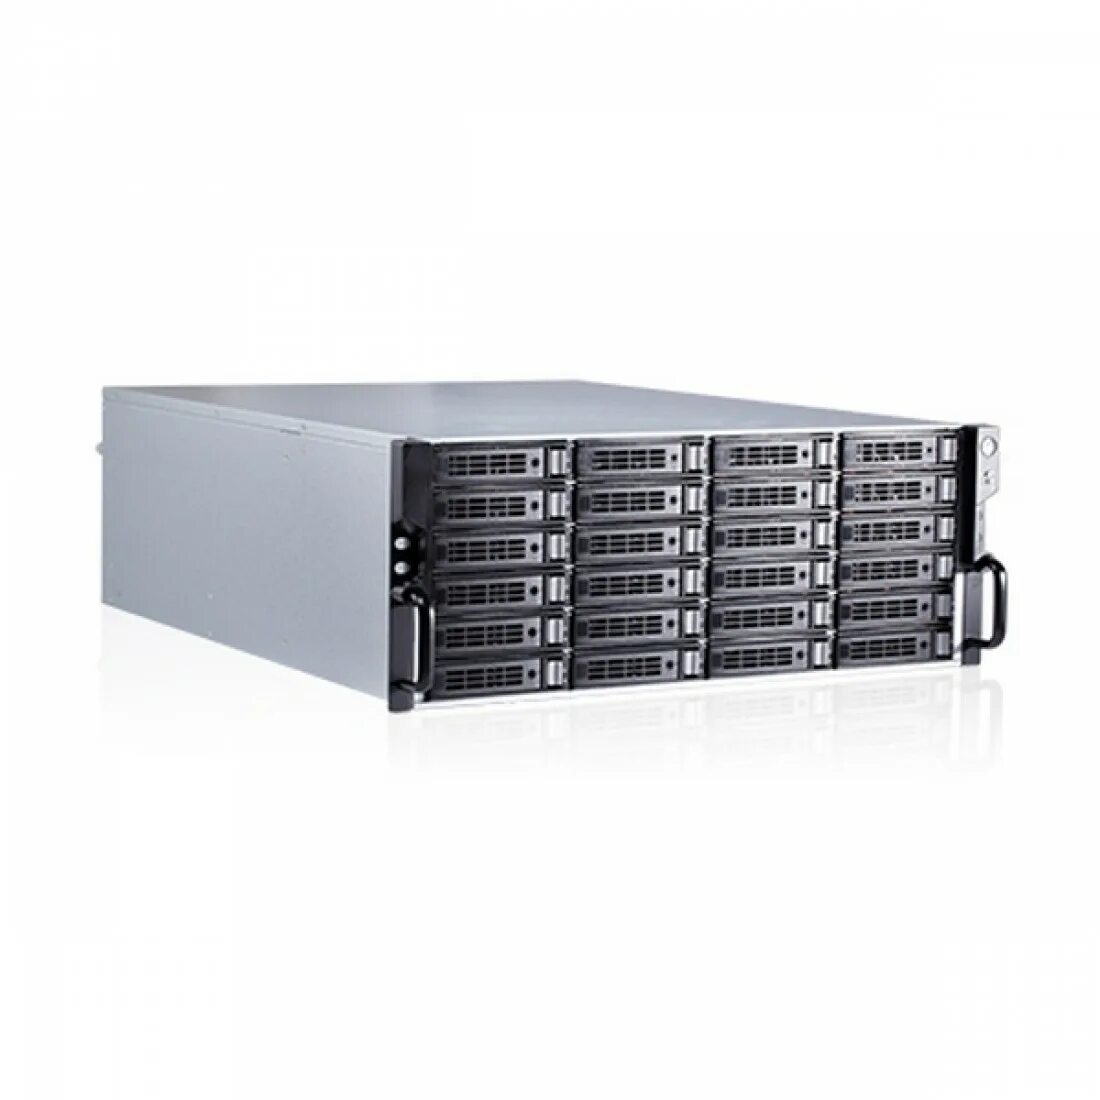 HIKCENTRAL-P-VSS-Base/hw/300ch. HIKCENTRAL-VSS. Видеосервер 4k 16 Ch 2hdd. Сервер HIKCENTRAL-P-VSS-Base/hw/64ch / Server.